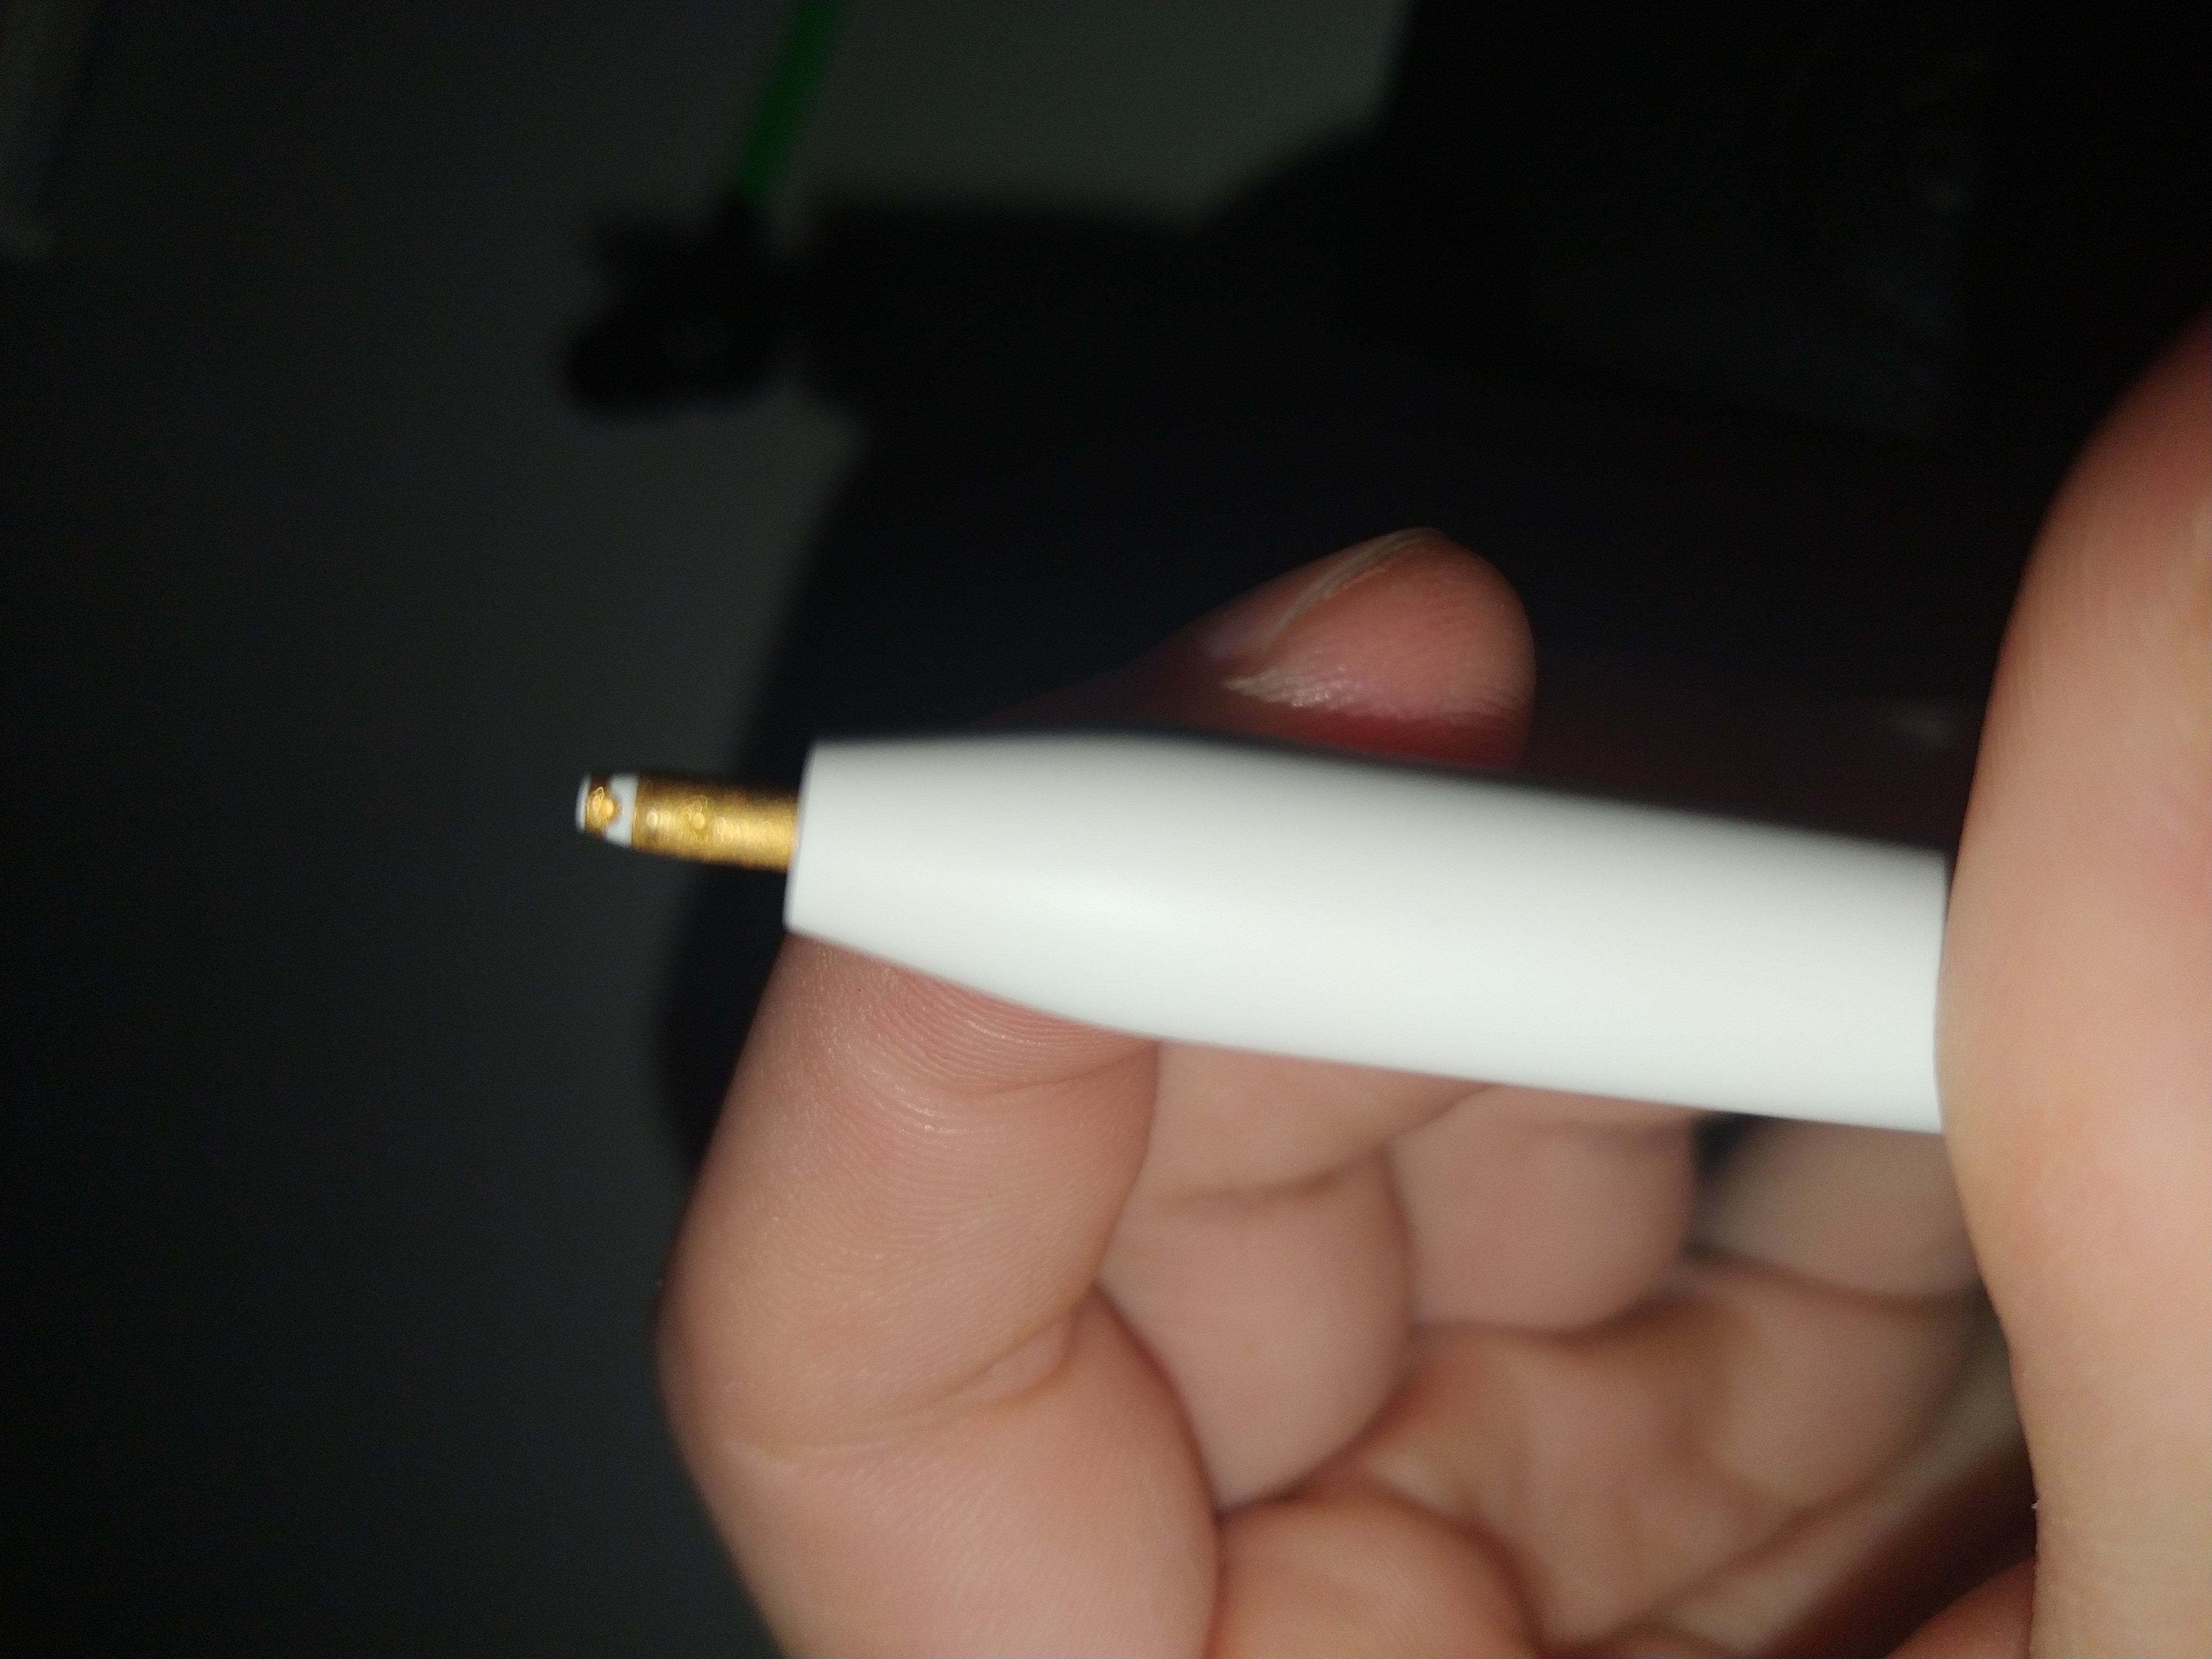 Does Apple Pencil 2 break?